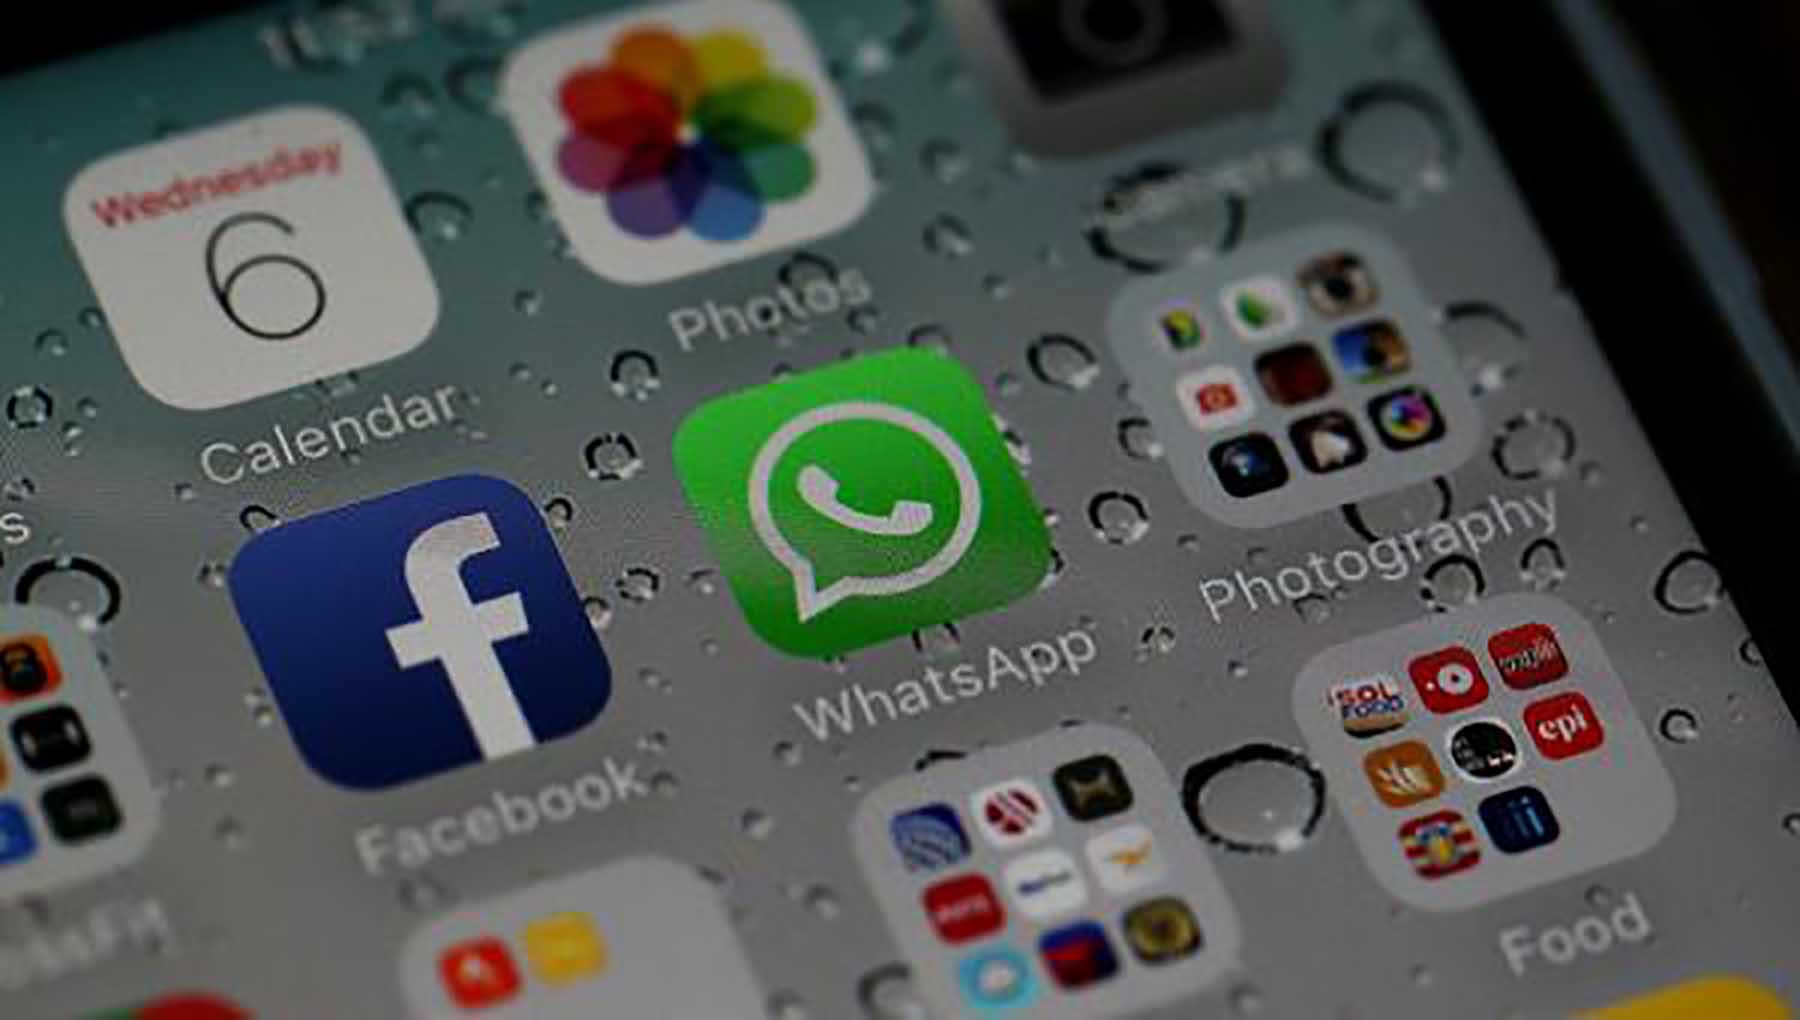 WhatsApp continúa de esta forma incorporando novedades para potenciar su servicio.